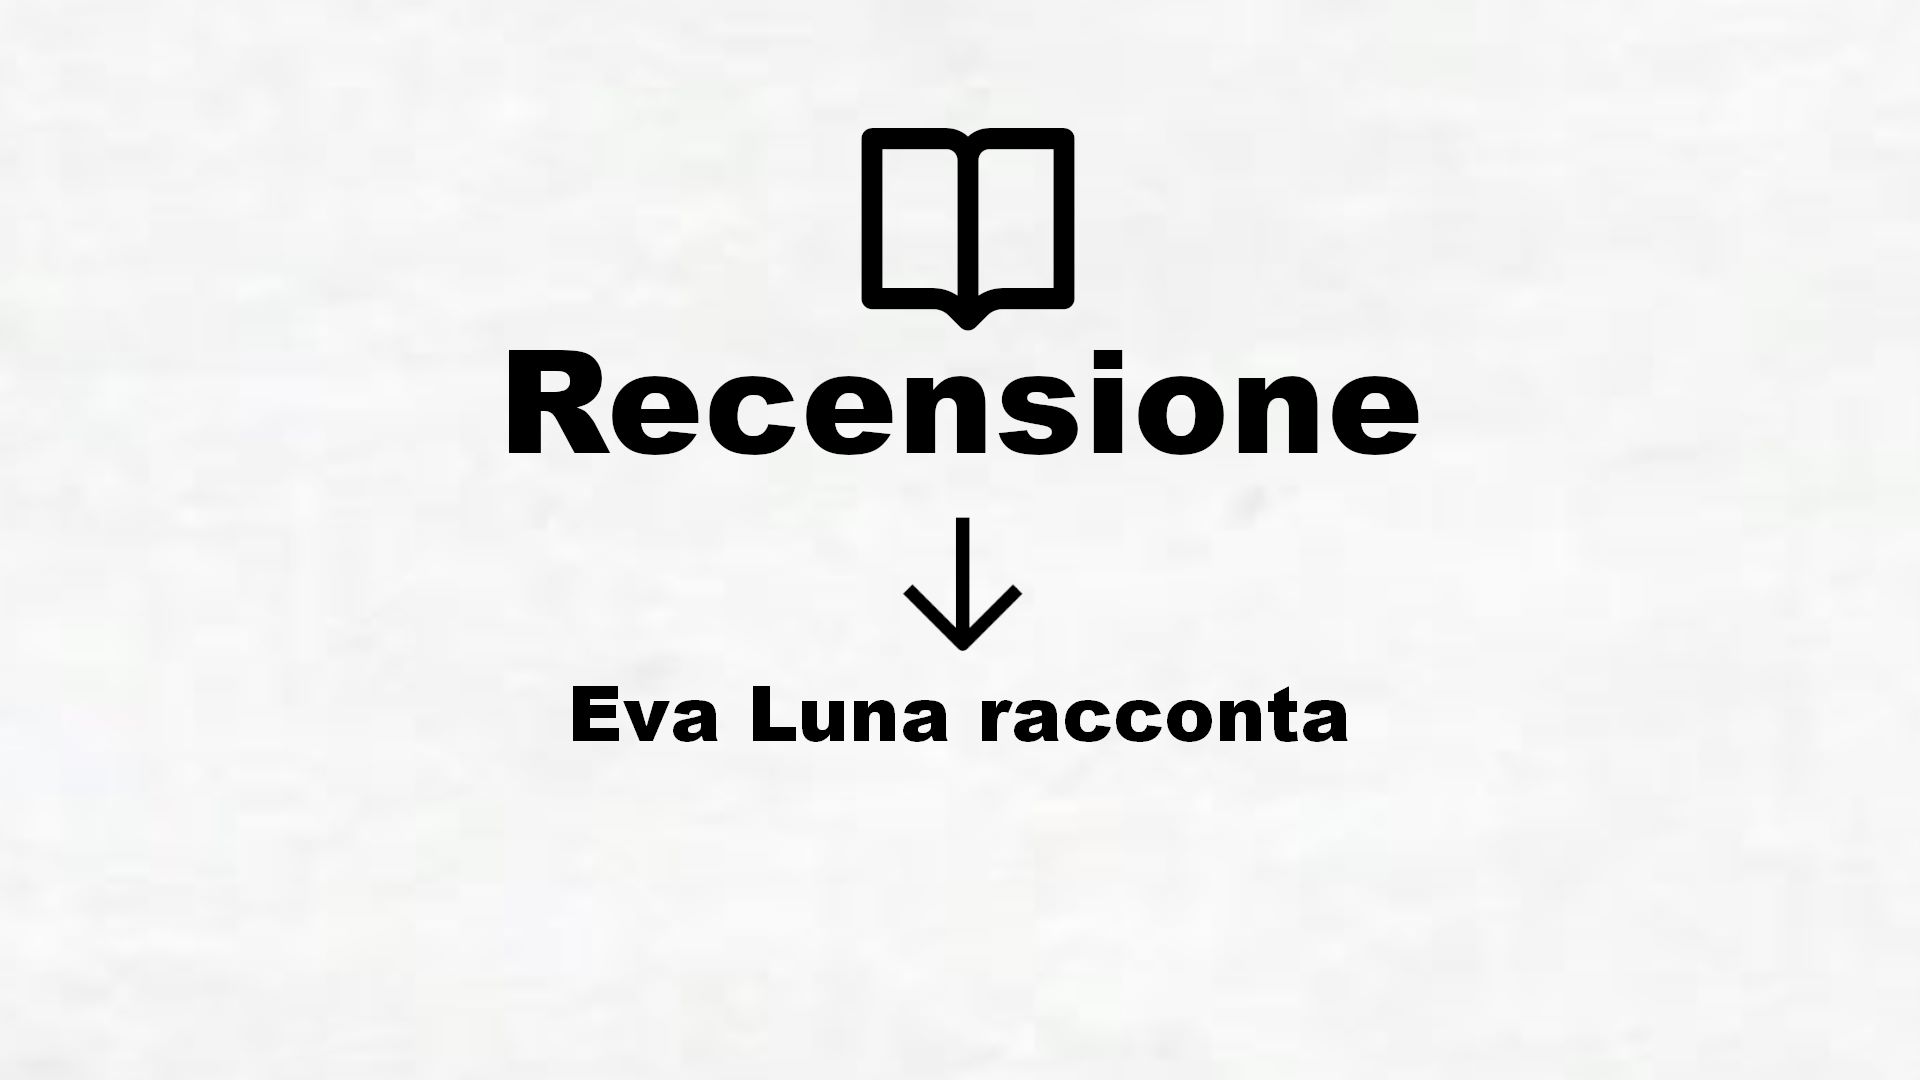 Eva Luna racconta – Recensione Libro